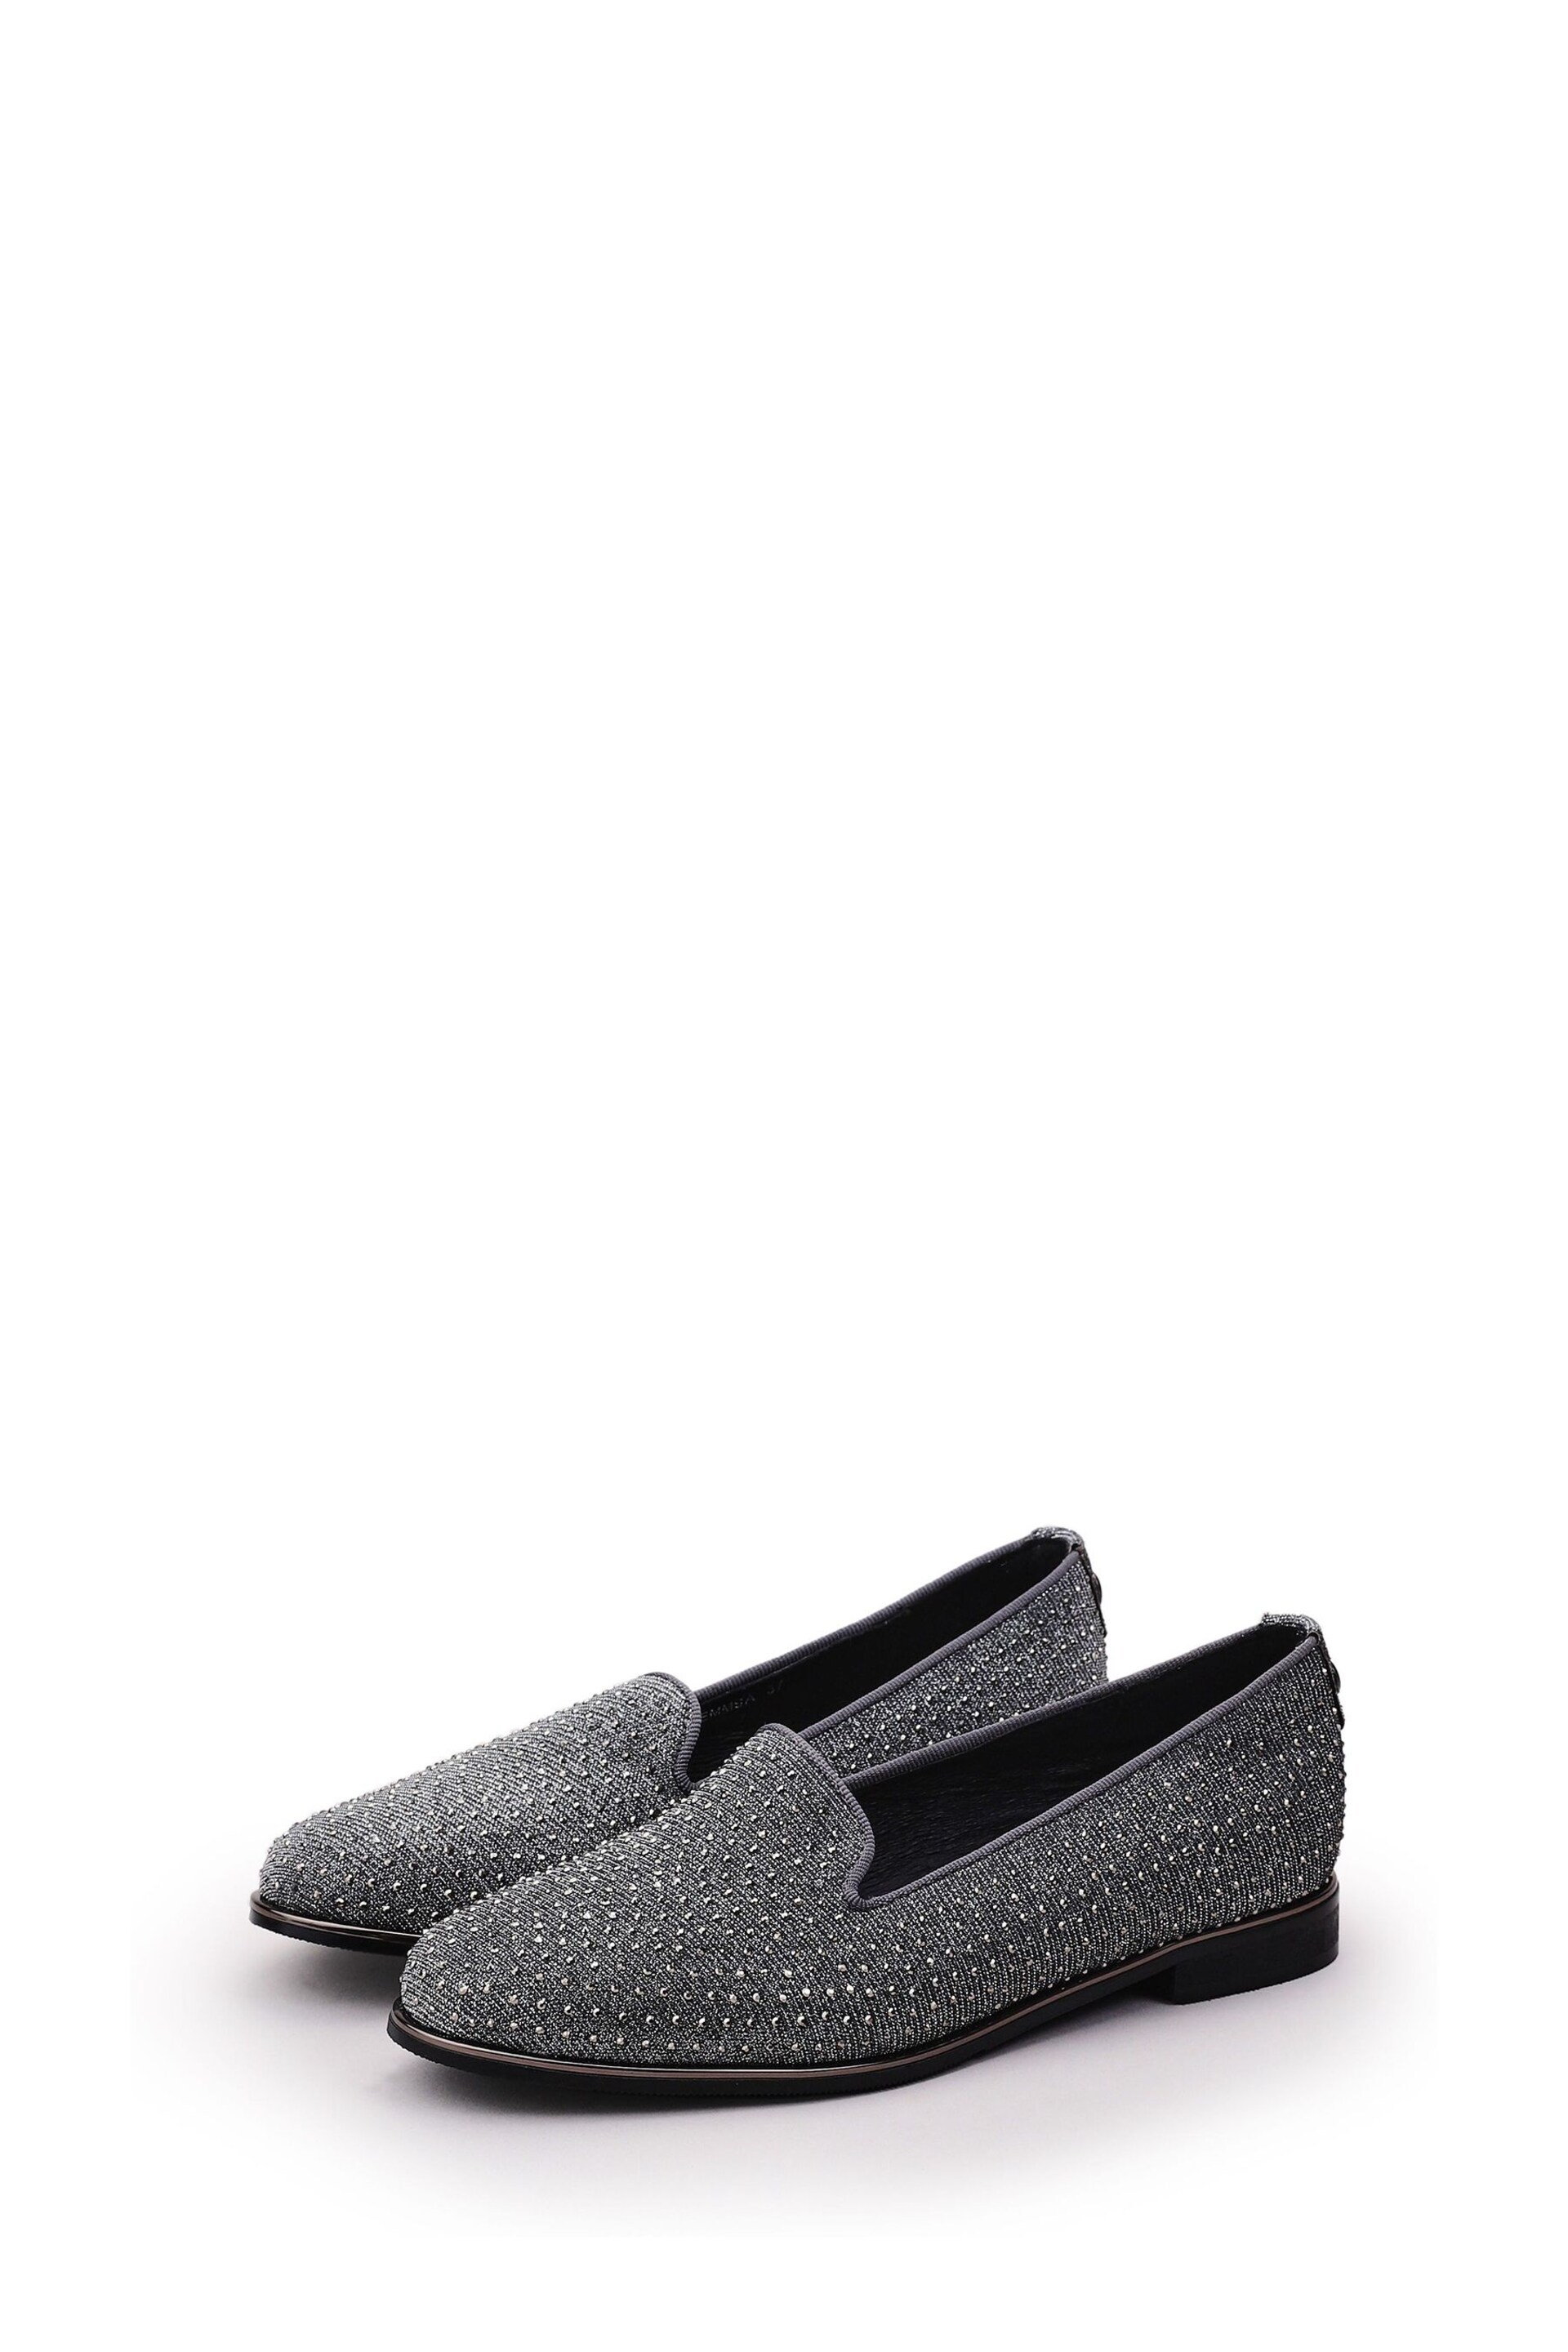 Moda in Pelle Grey Emmas Slip Ons Embellished Smart Shoes - Image 2 of 4